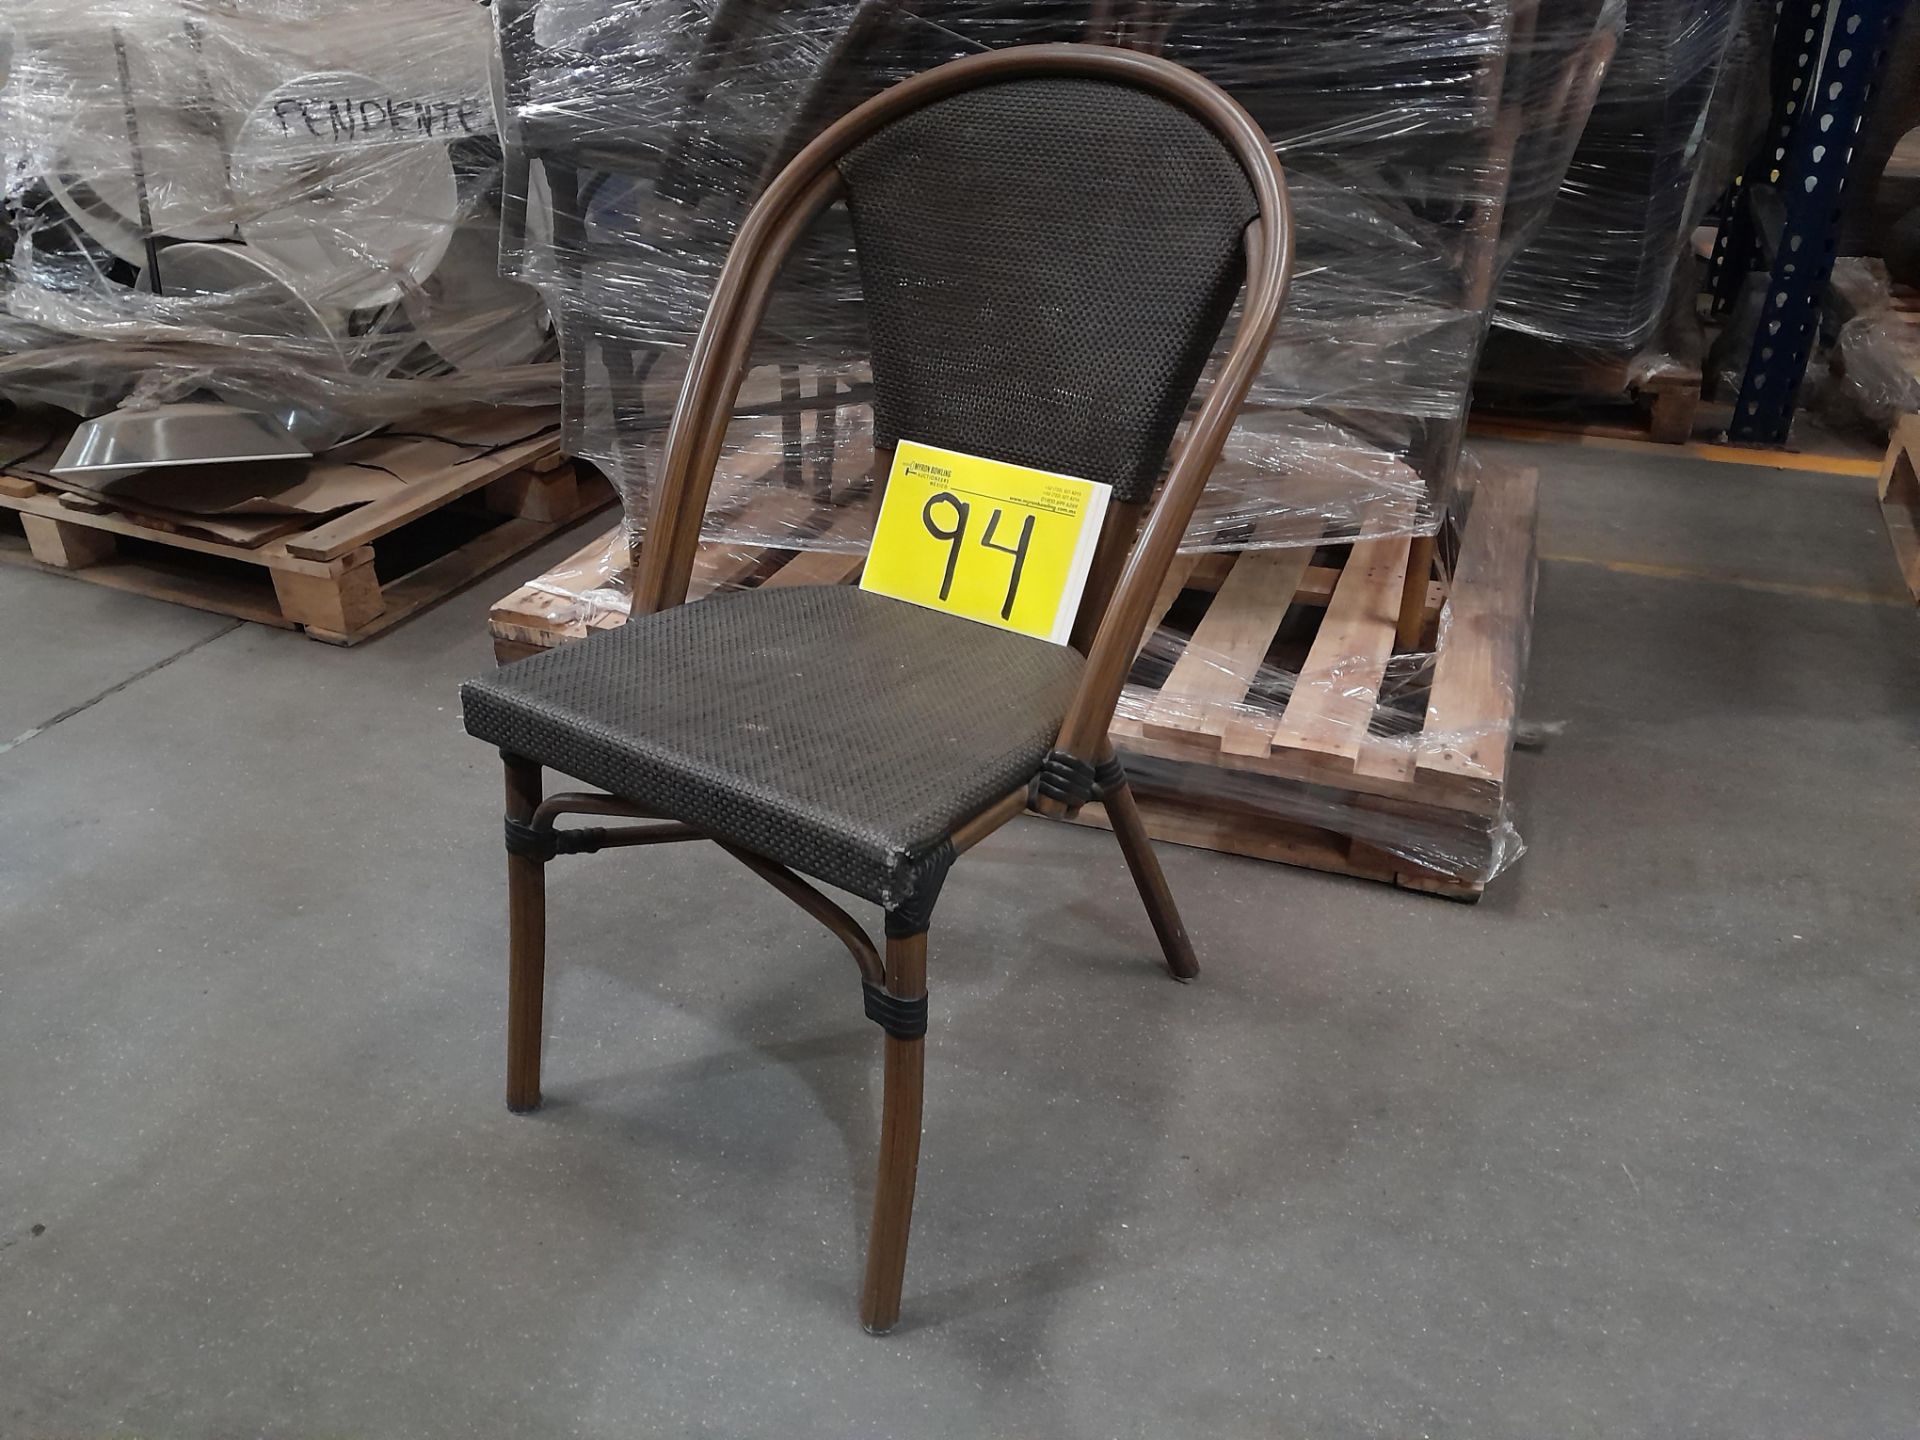 Lote de 12 sillas de ratán, color gris (Equipo usado) - Image 2 of 4